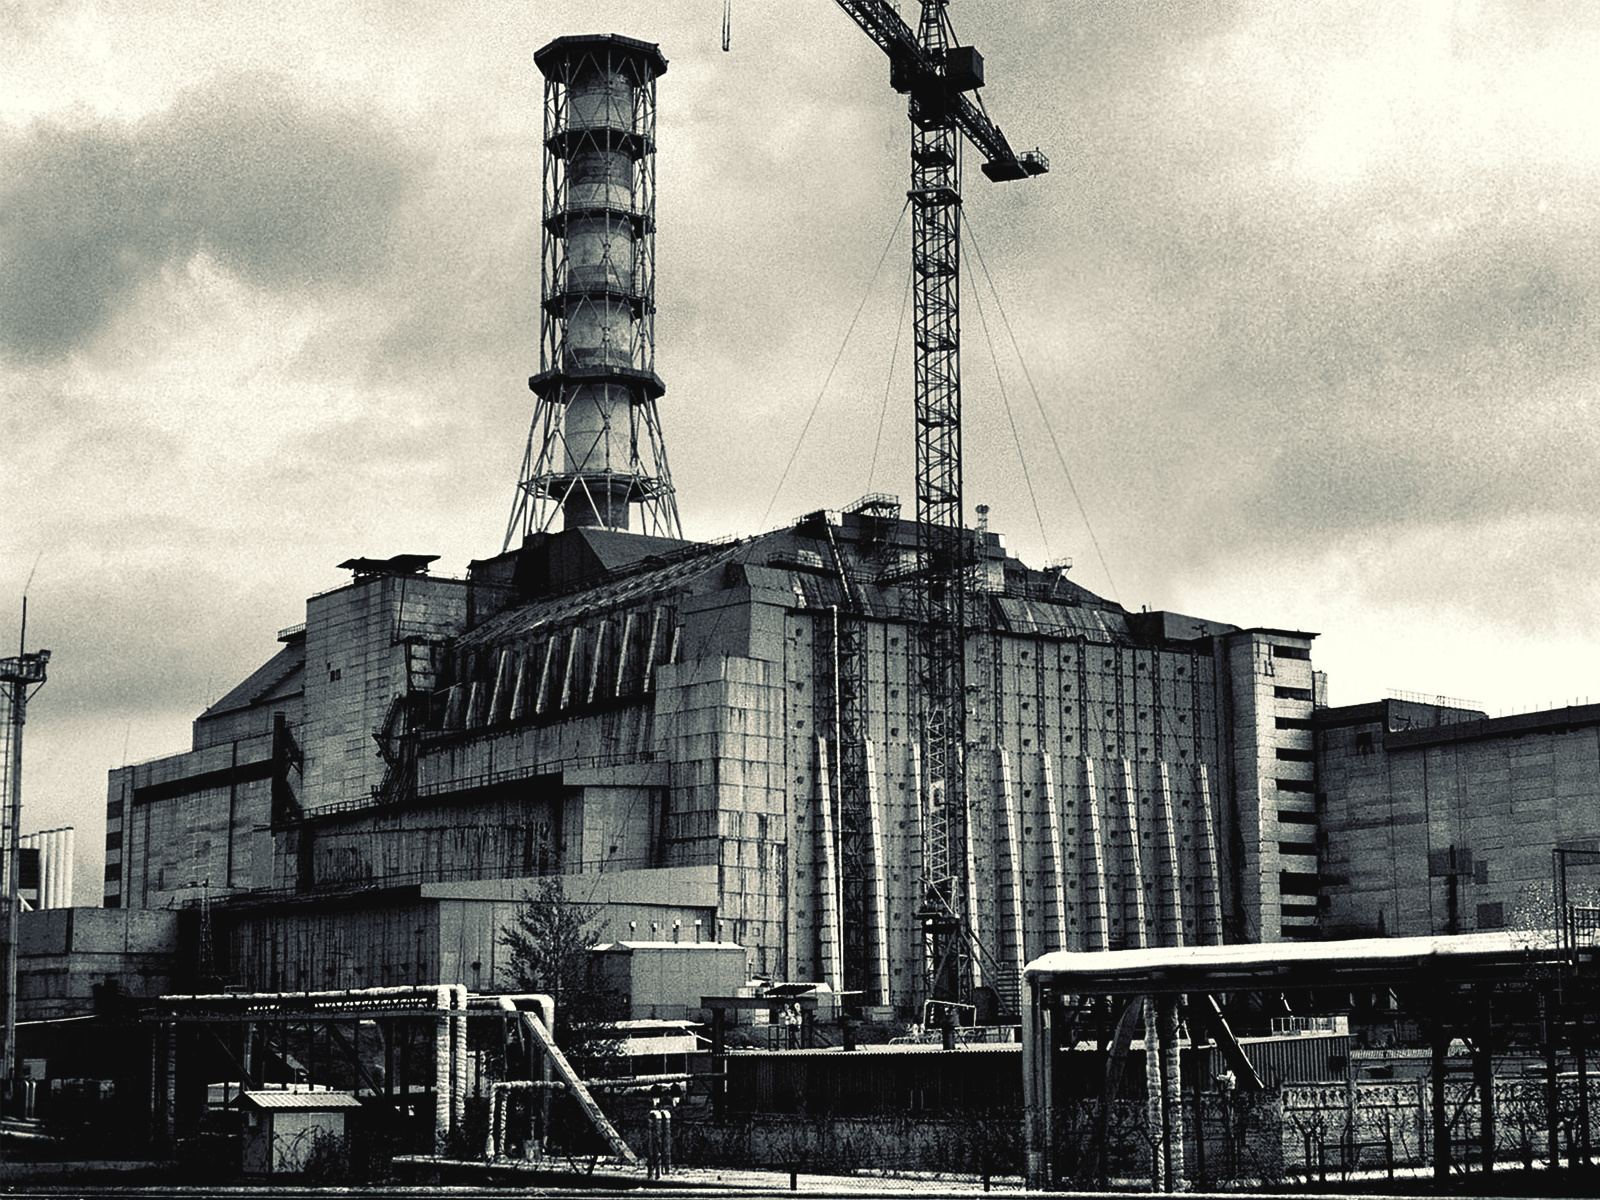 Чернобыльская атомная электростанция. Припять станция АЭС. Атомная станция ЧАЭС Чернобыльская. АЭС Припять 4 энергоблок. Припять ЧАЭС 1986.